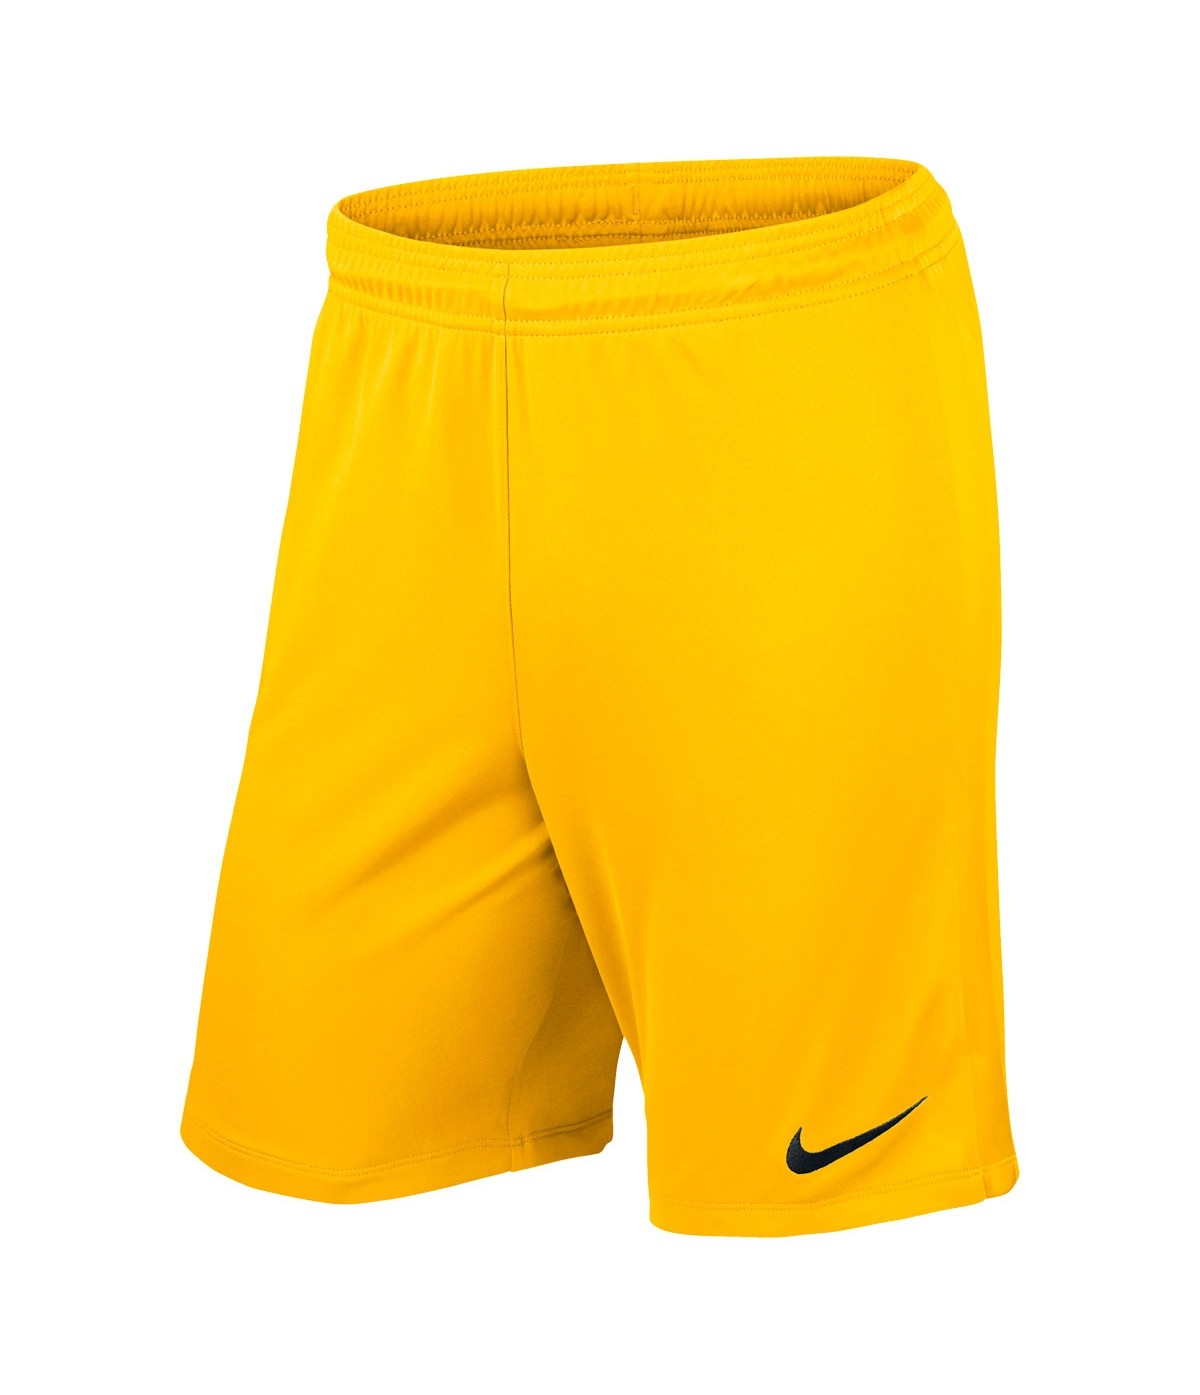 Шорты мужские Nike 725881 желтые 2XL